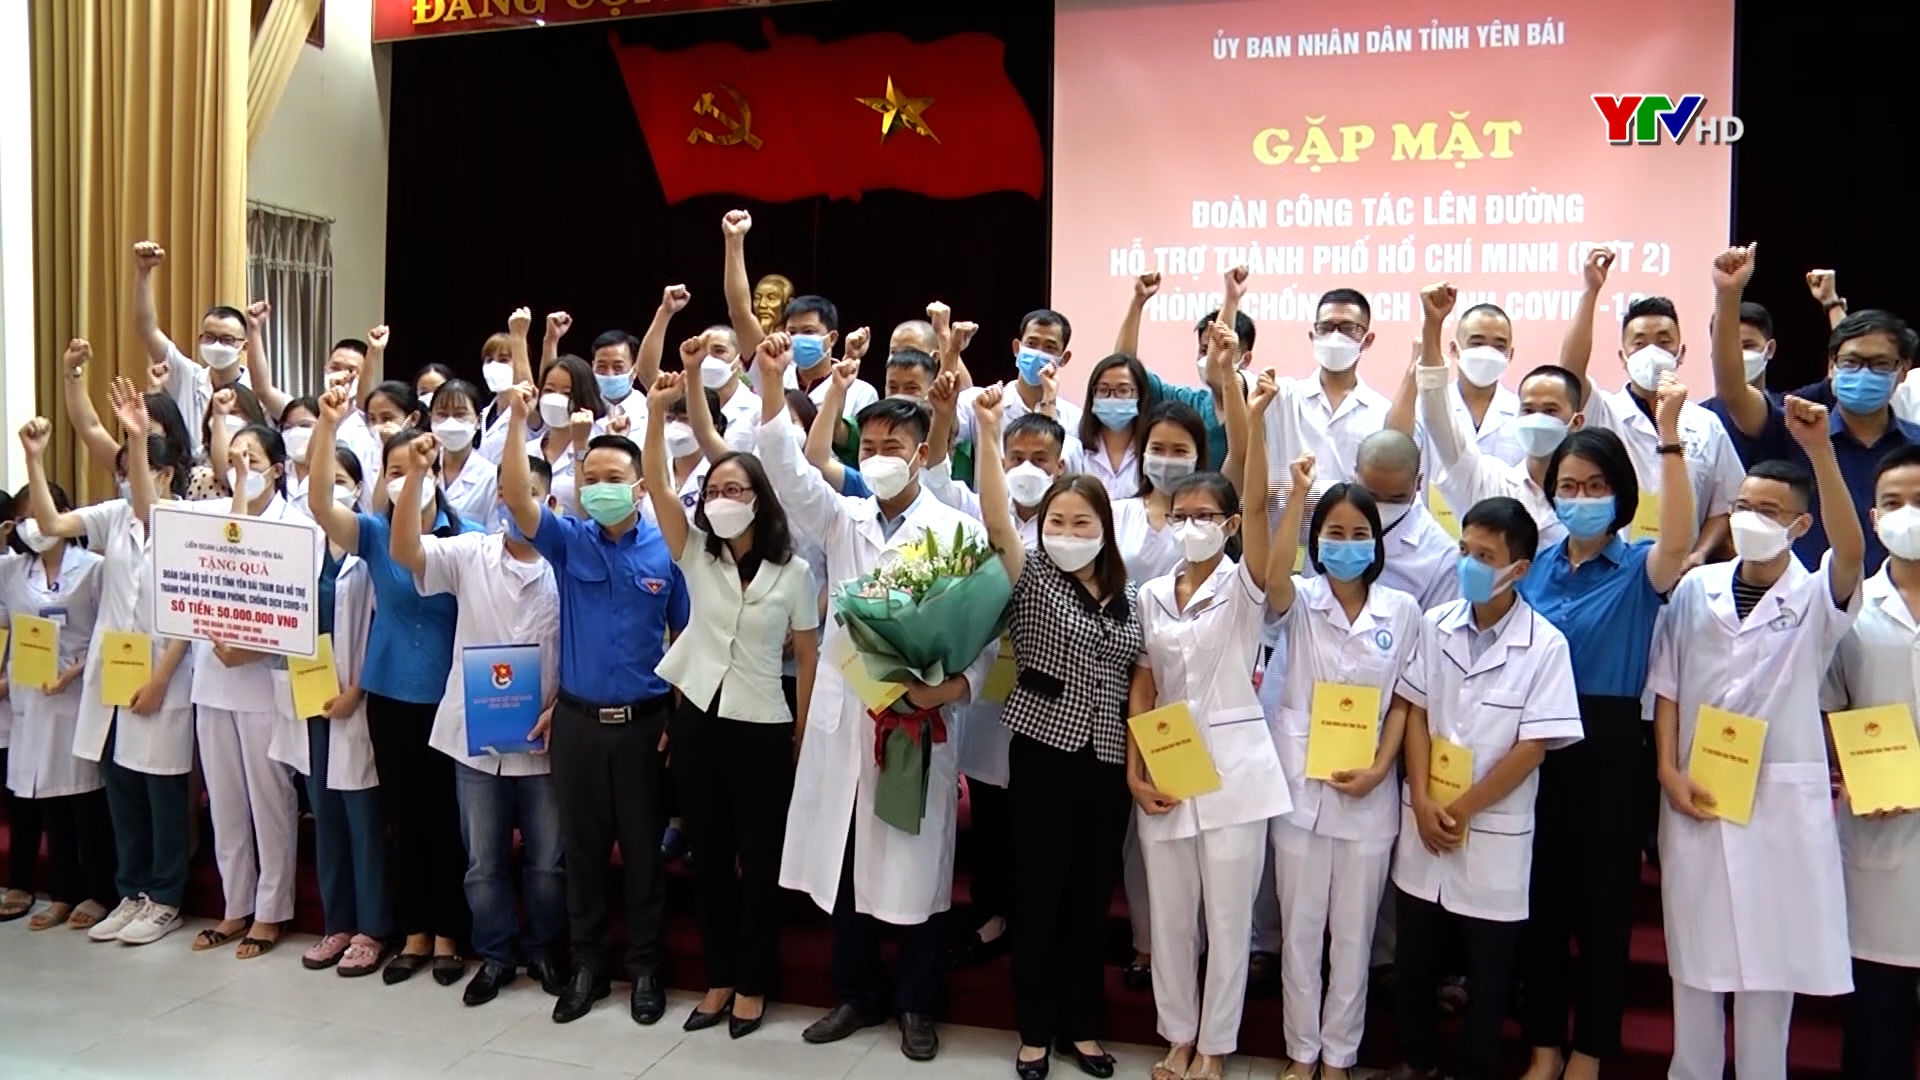 40 y, bác sỹ của tỉnh Yên Bái lên đường hỗ trợ thành phố Hồ Chí Minh phòng, chống dịch COVID - 19